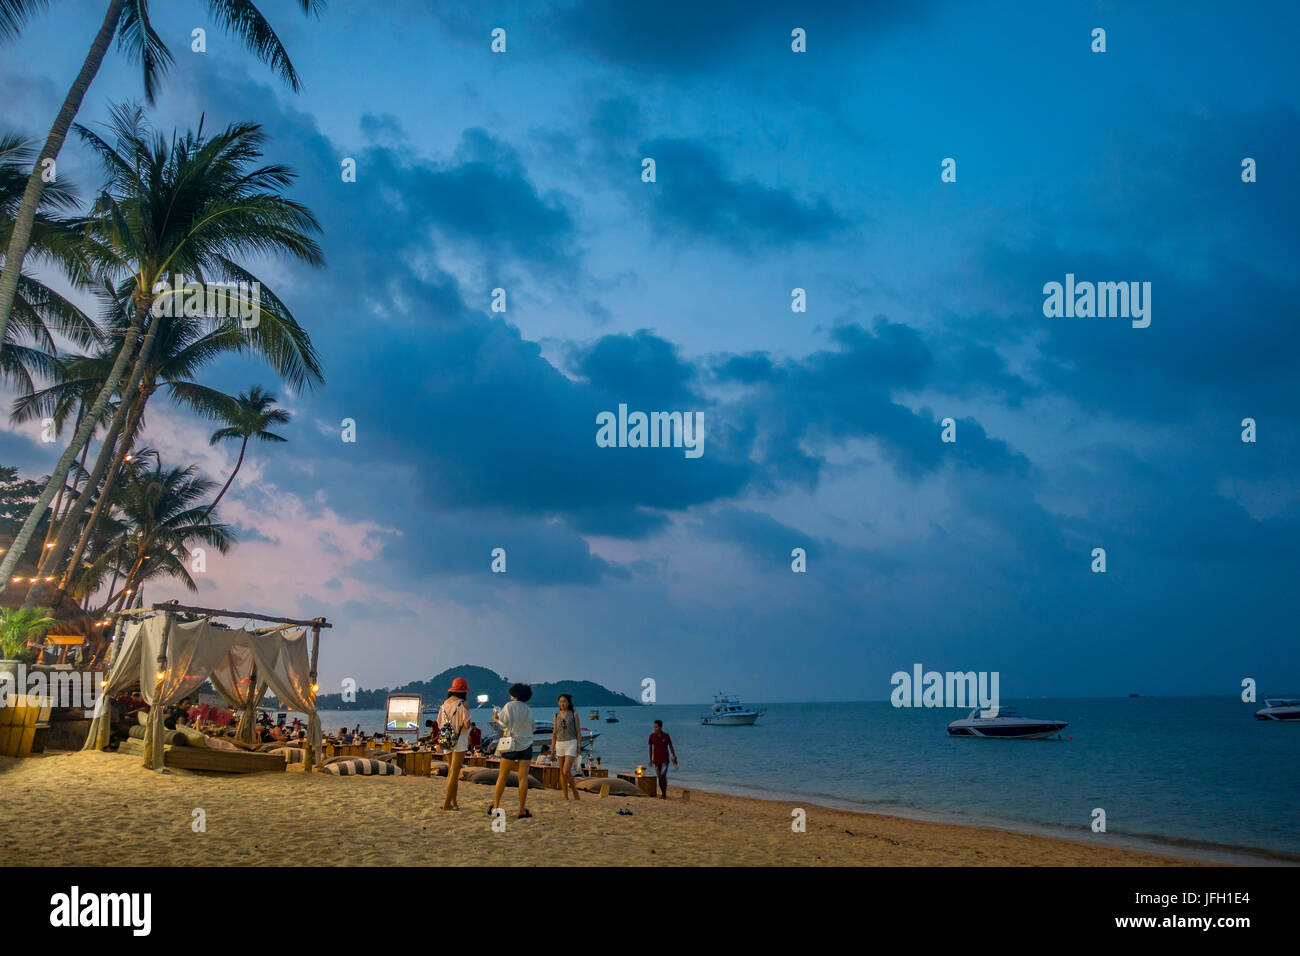 Bar de plage, les touristes sur la plage, Bo Phut Beach, île de Ko Samui, Thaïlande, Asie Banque D'Images